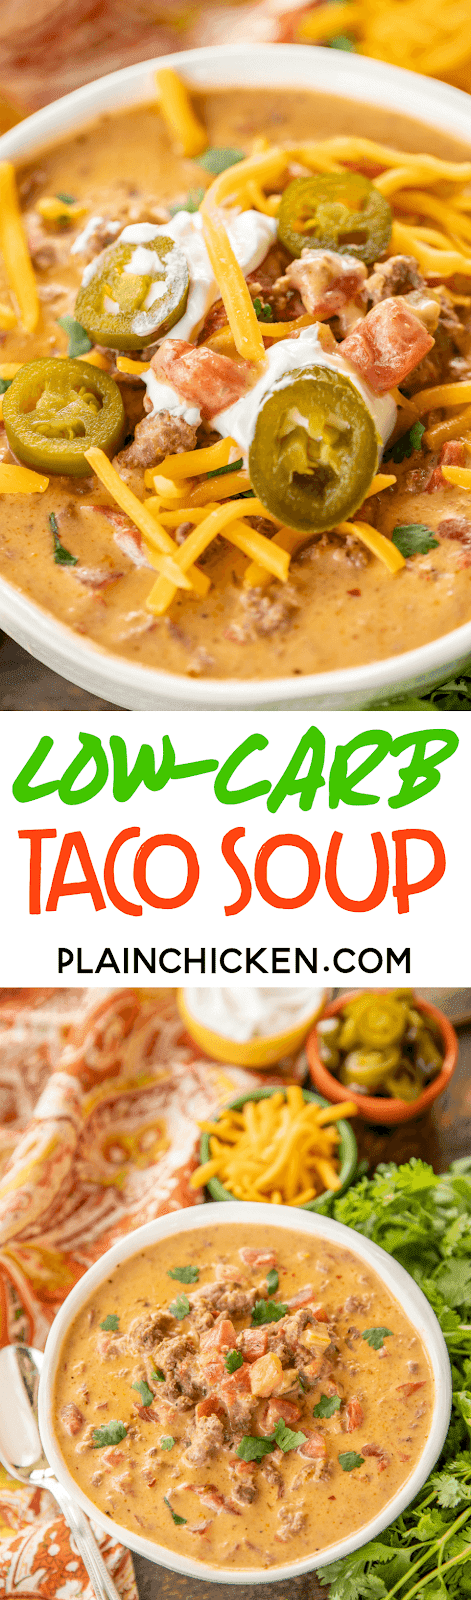 Low-Carb Taco Soup - Plain Chicken